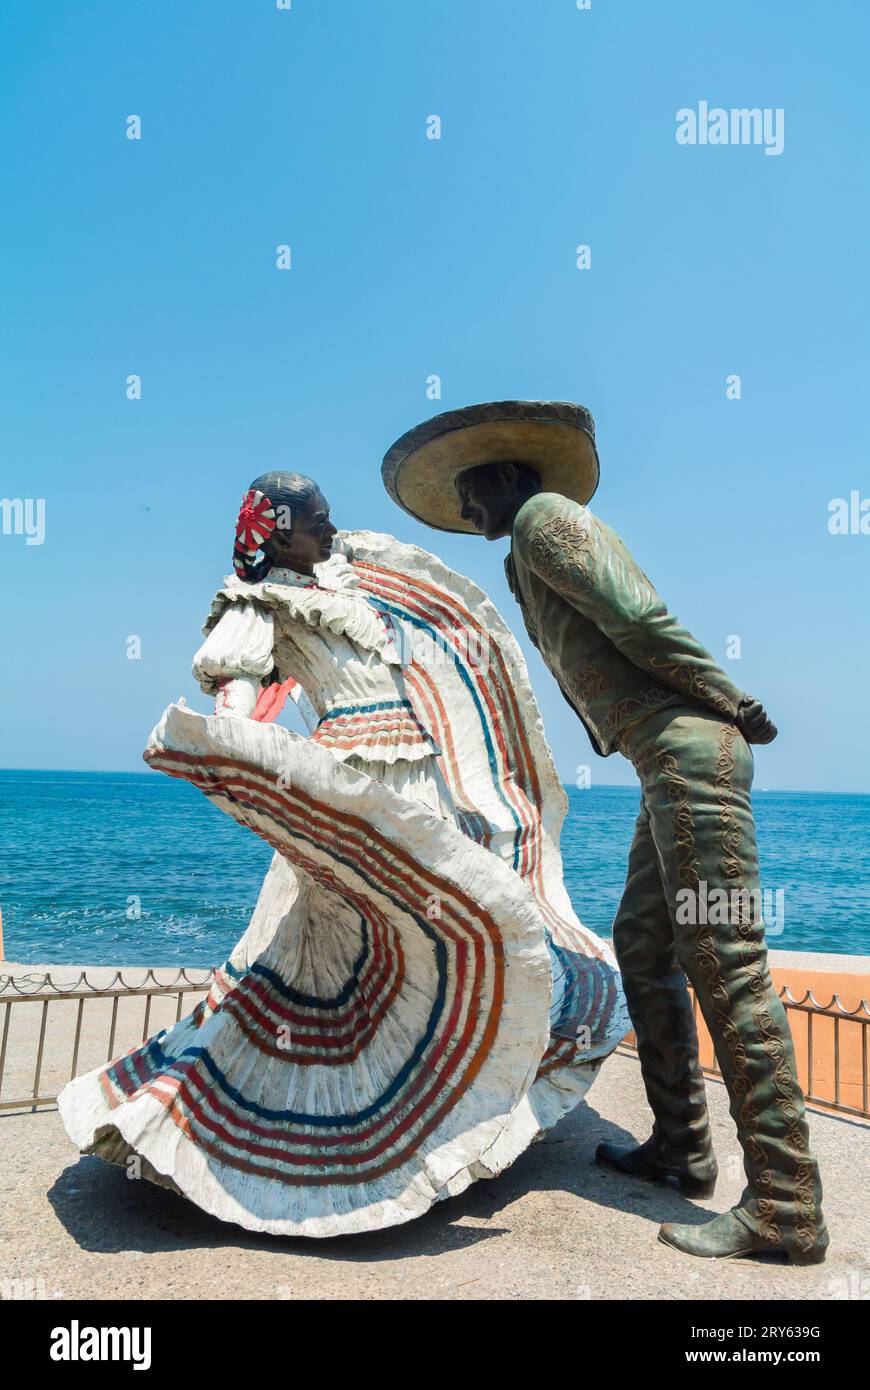 Puerto Vallarta, Jalisco, Mexiko, Statue eines tanzenden Paares in mexikanischer Tracht an einer Promenade im Viertel El Centro. Nur Editorial. Stockfoto